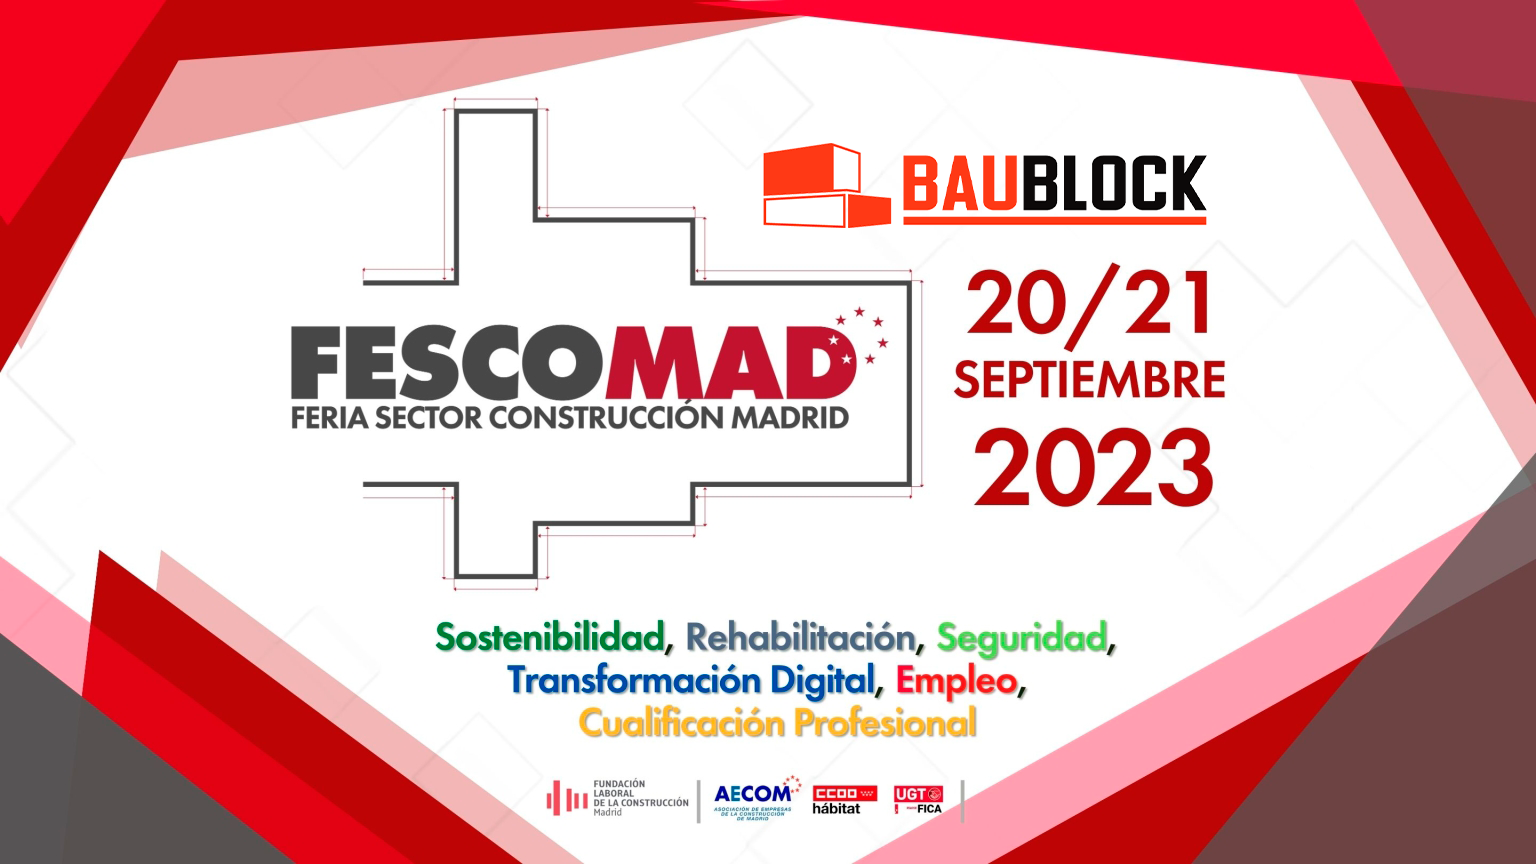 Invitamos a visitar nuestro Stand Baublock en la exposición FESCOMAD 2023 en Madrid